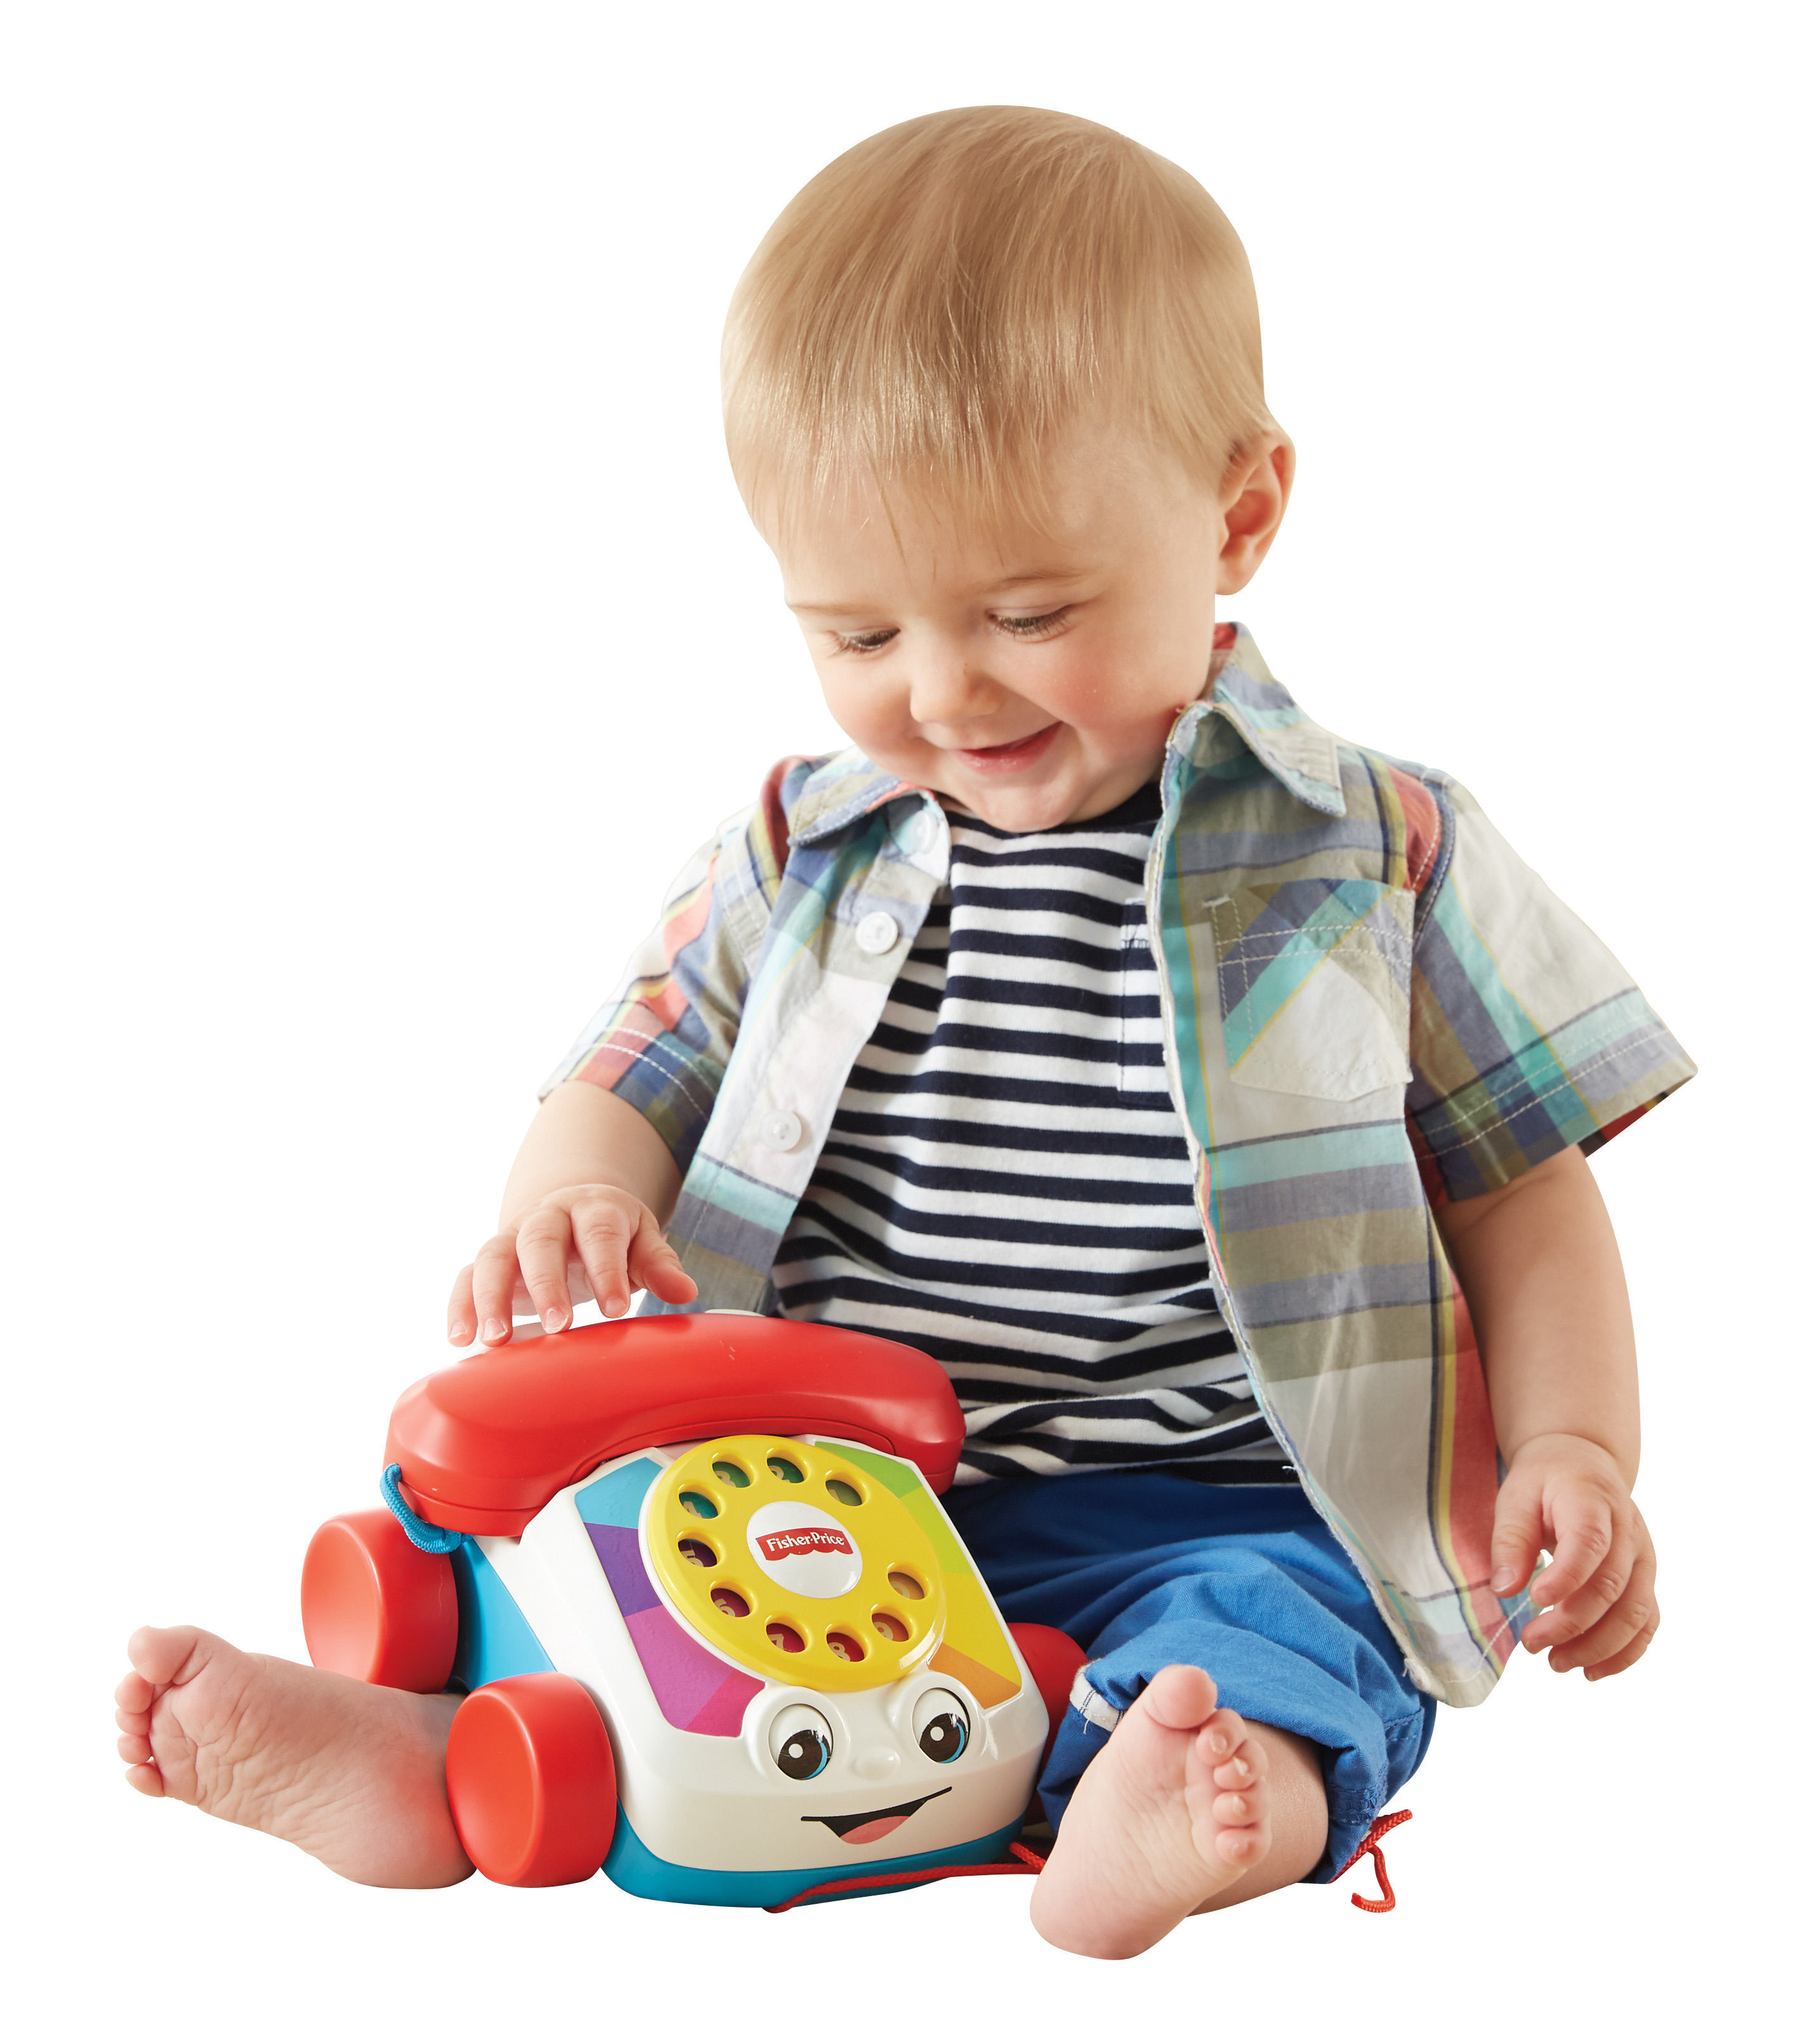 Nachzieh-Spielzeug, Plappertelefon, FISHER Baby Nachziehtier Spielzeug-Telefon PRICE Mehrfarbig